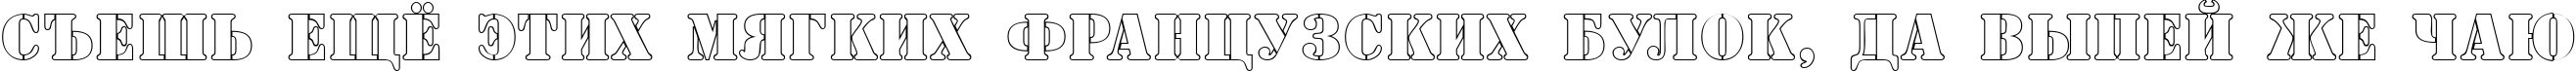 Пример написания шрифтом a_SamperOtl текста на русском